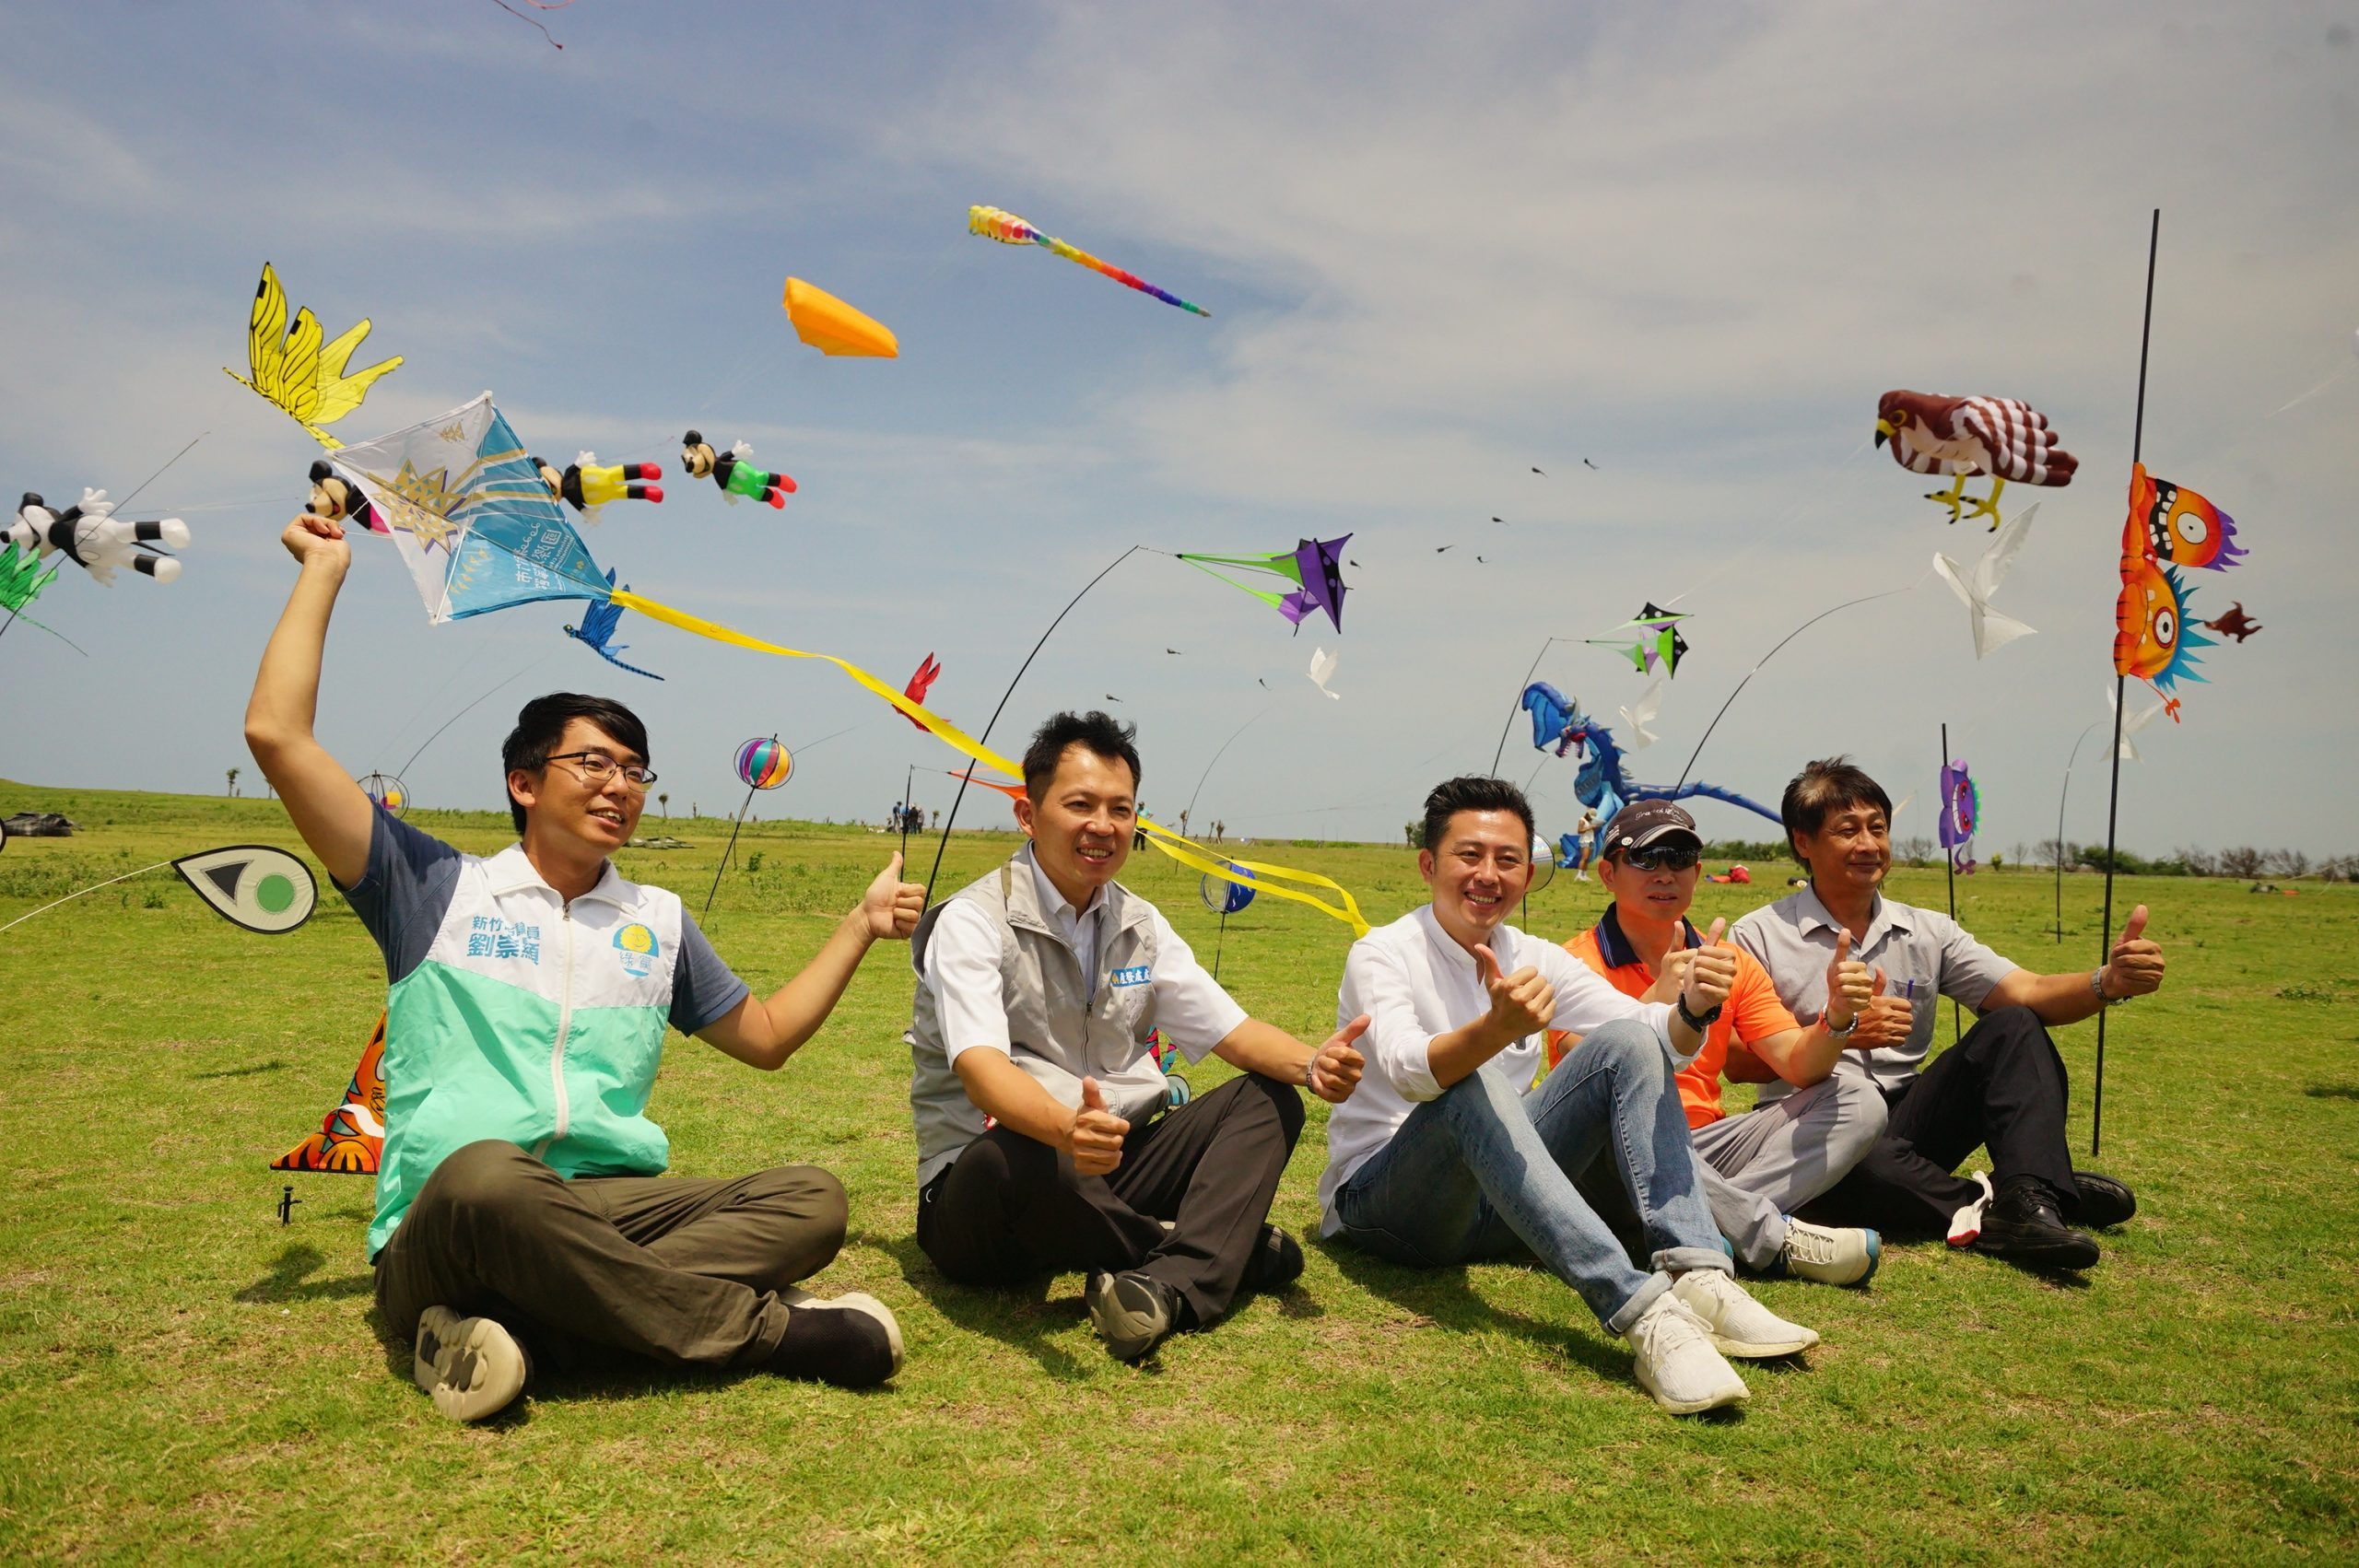 2020新竹市國際風箏節周末登場 16米飛龍、夜光風箏、特技劇場秀 綻放漁港天空